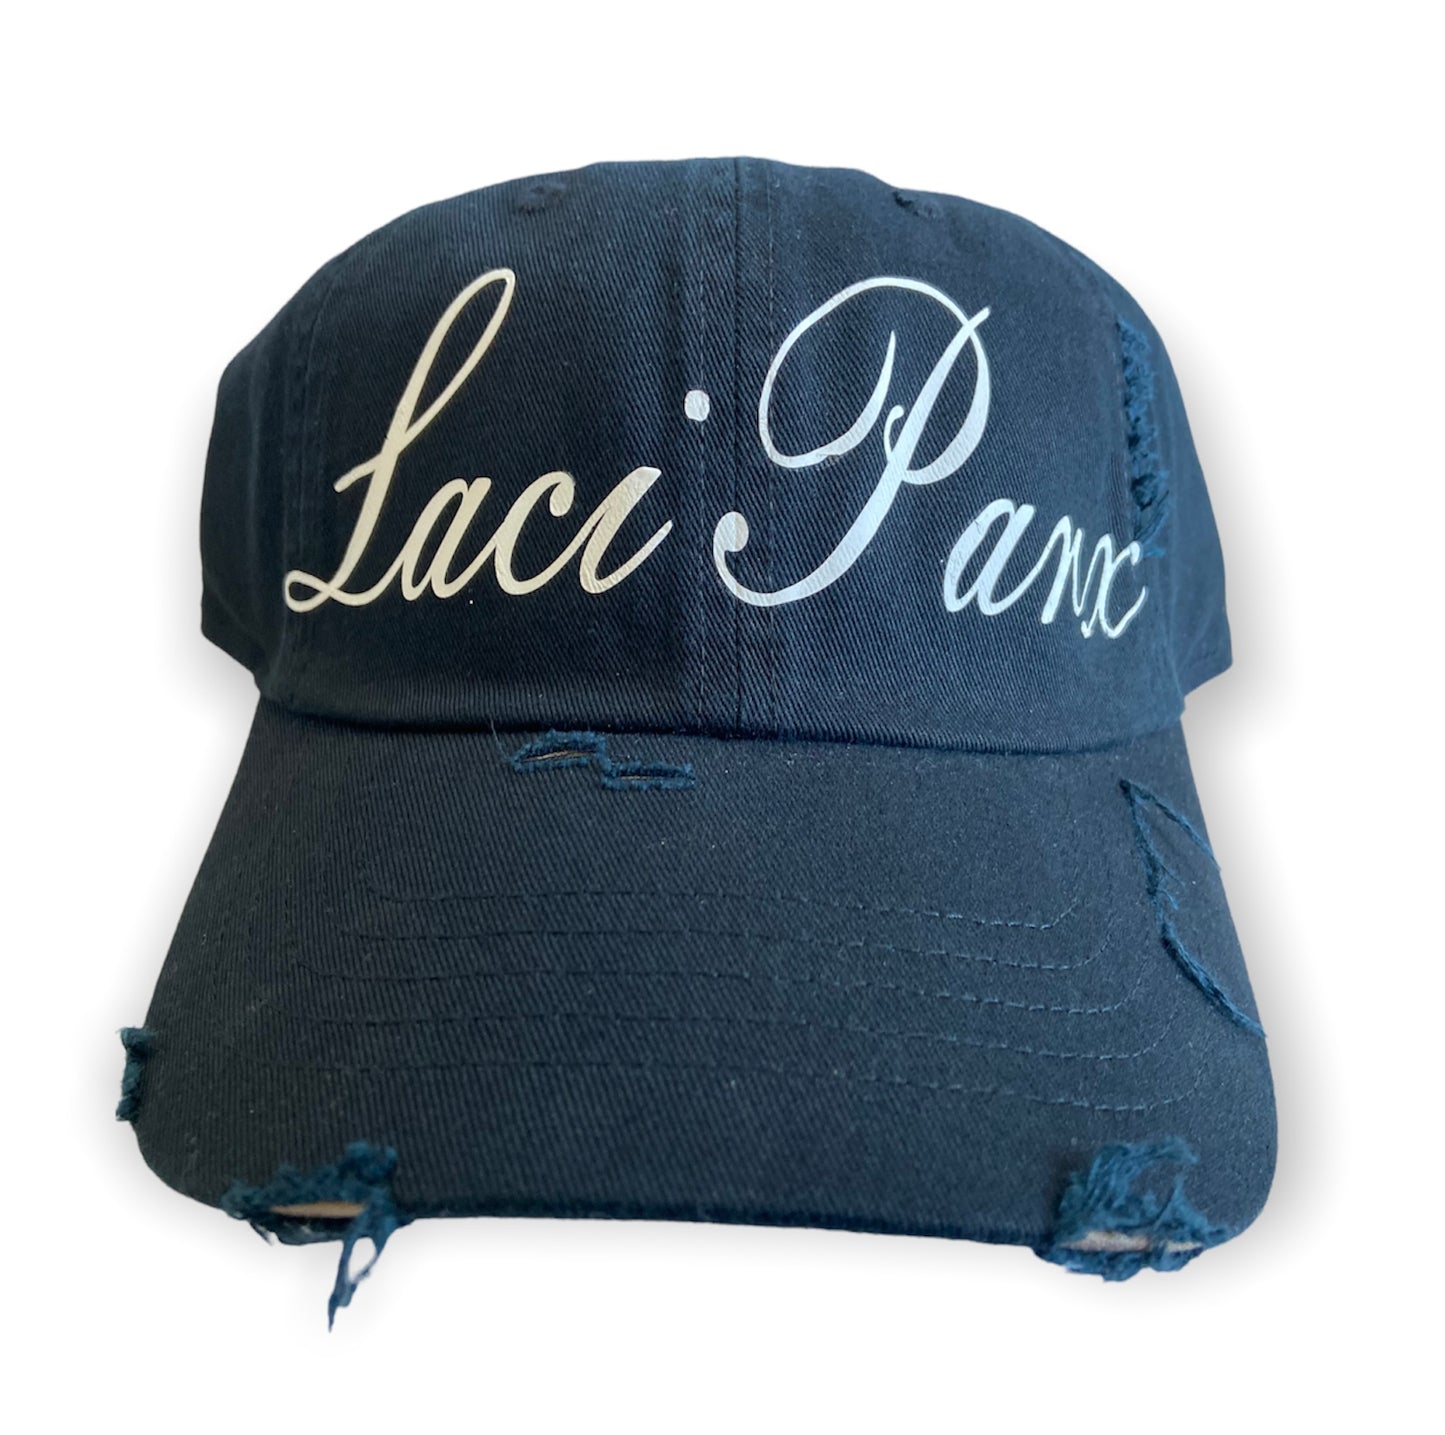 Laci Parx chapeau (hat) | Luxury Fragrance Brand | LaciParxCollection